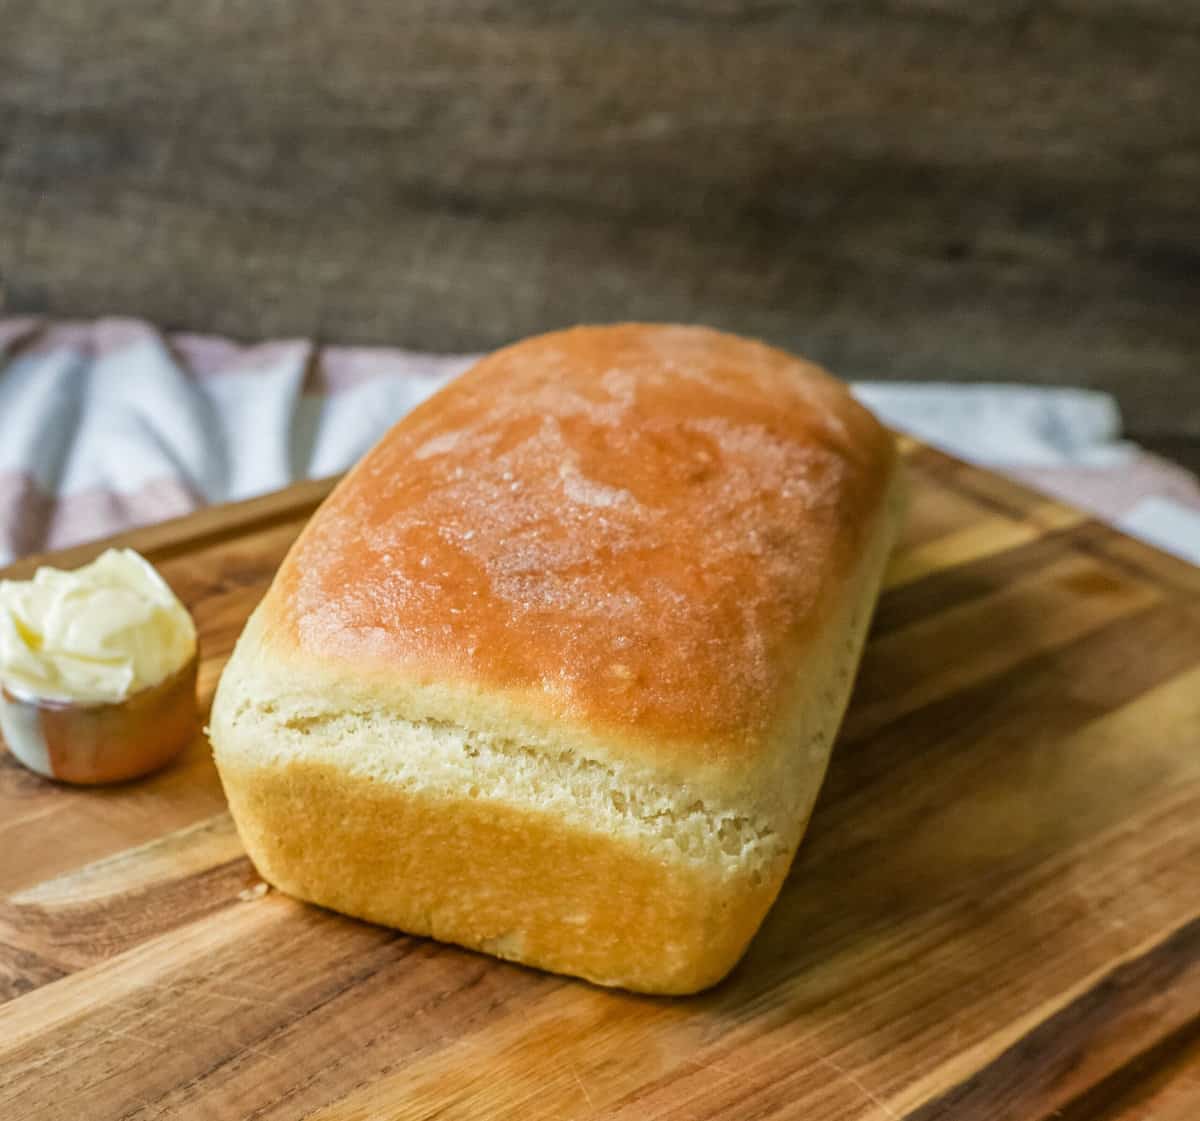 https://www.modernhoney.com/wp-content/uploads/2022/08/The-Best-Homemade-White-Bread-Recipe-scaled.jpg